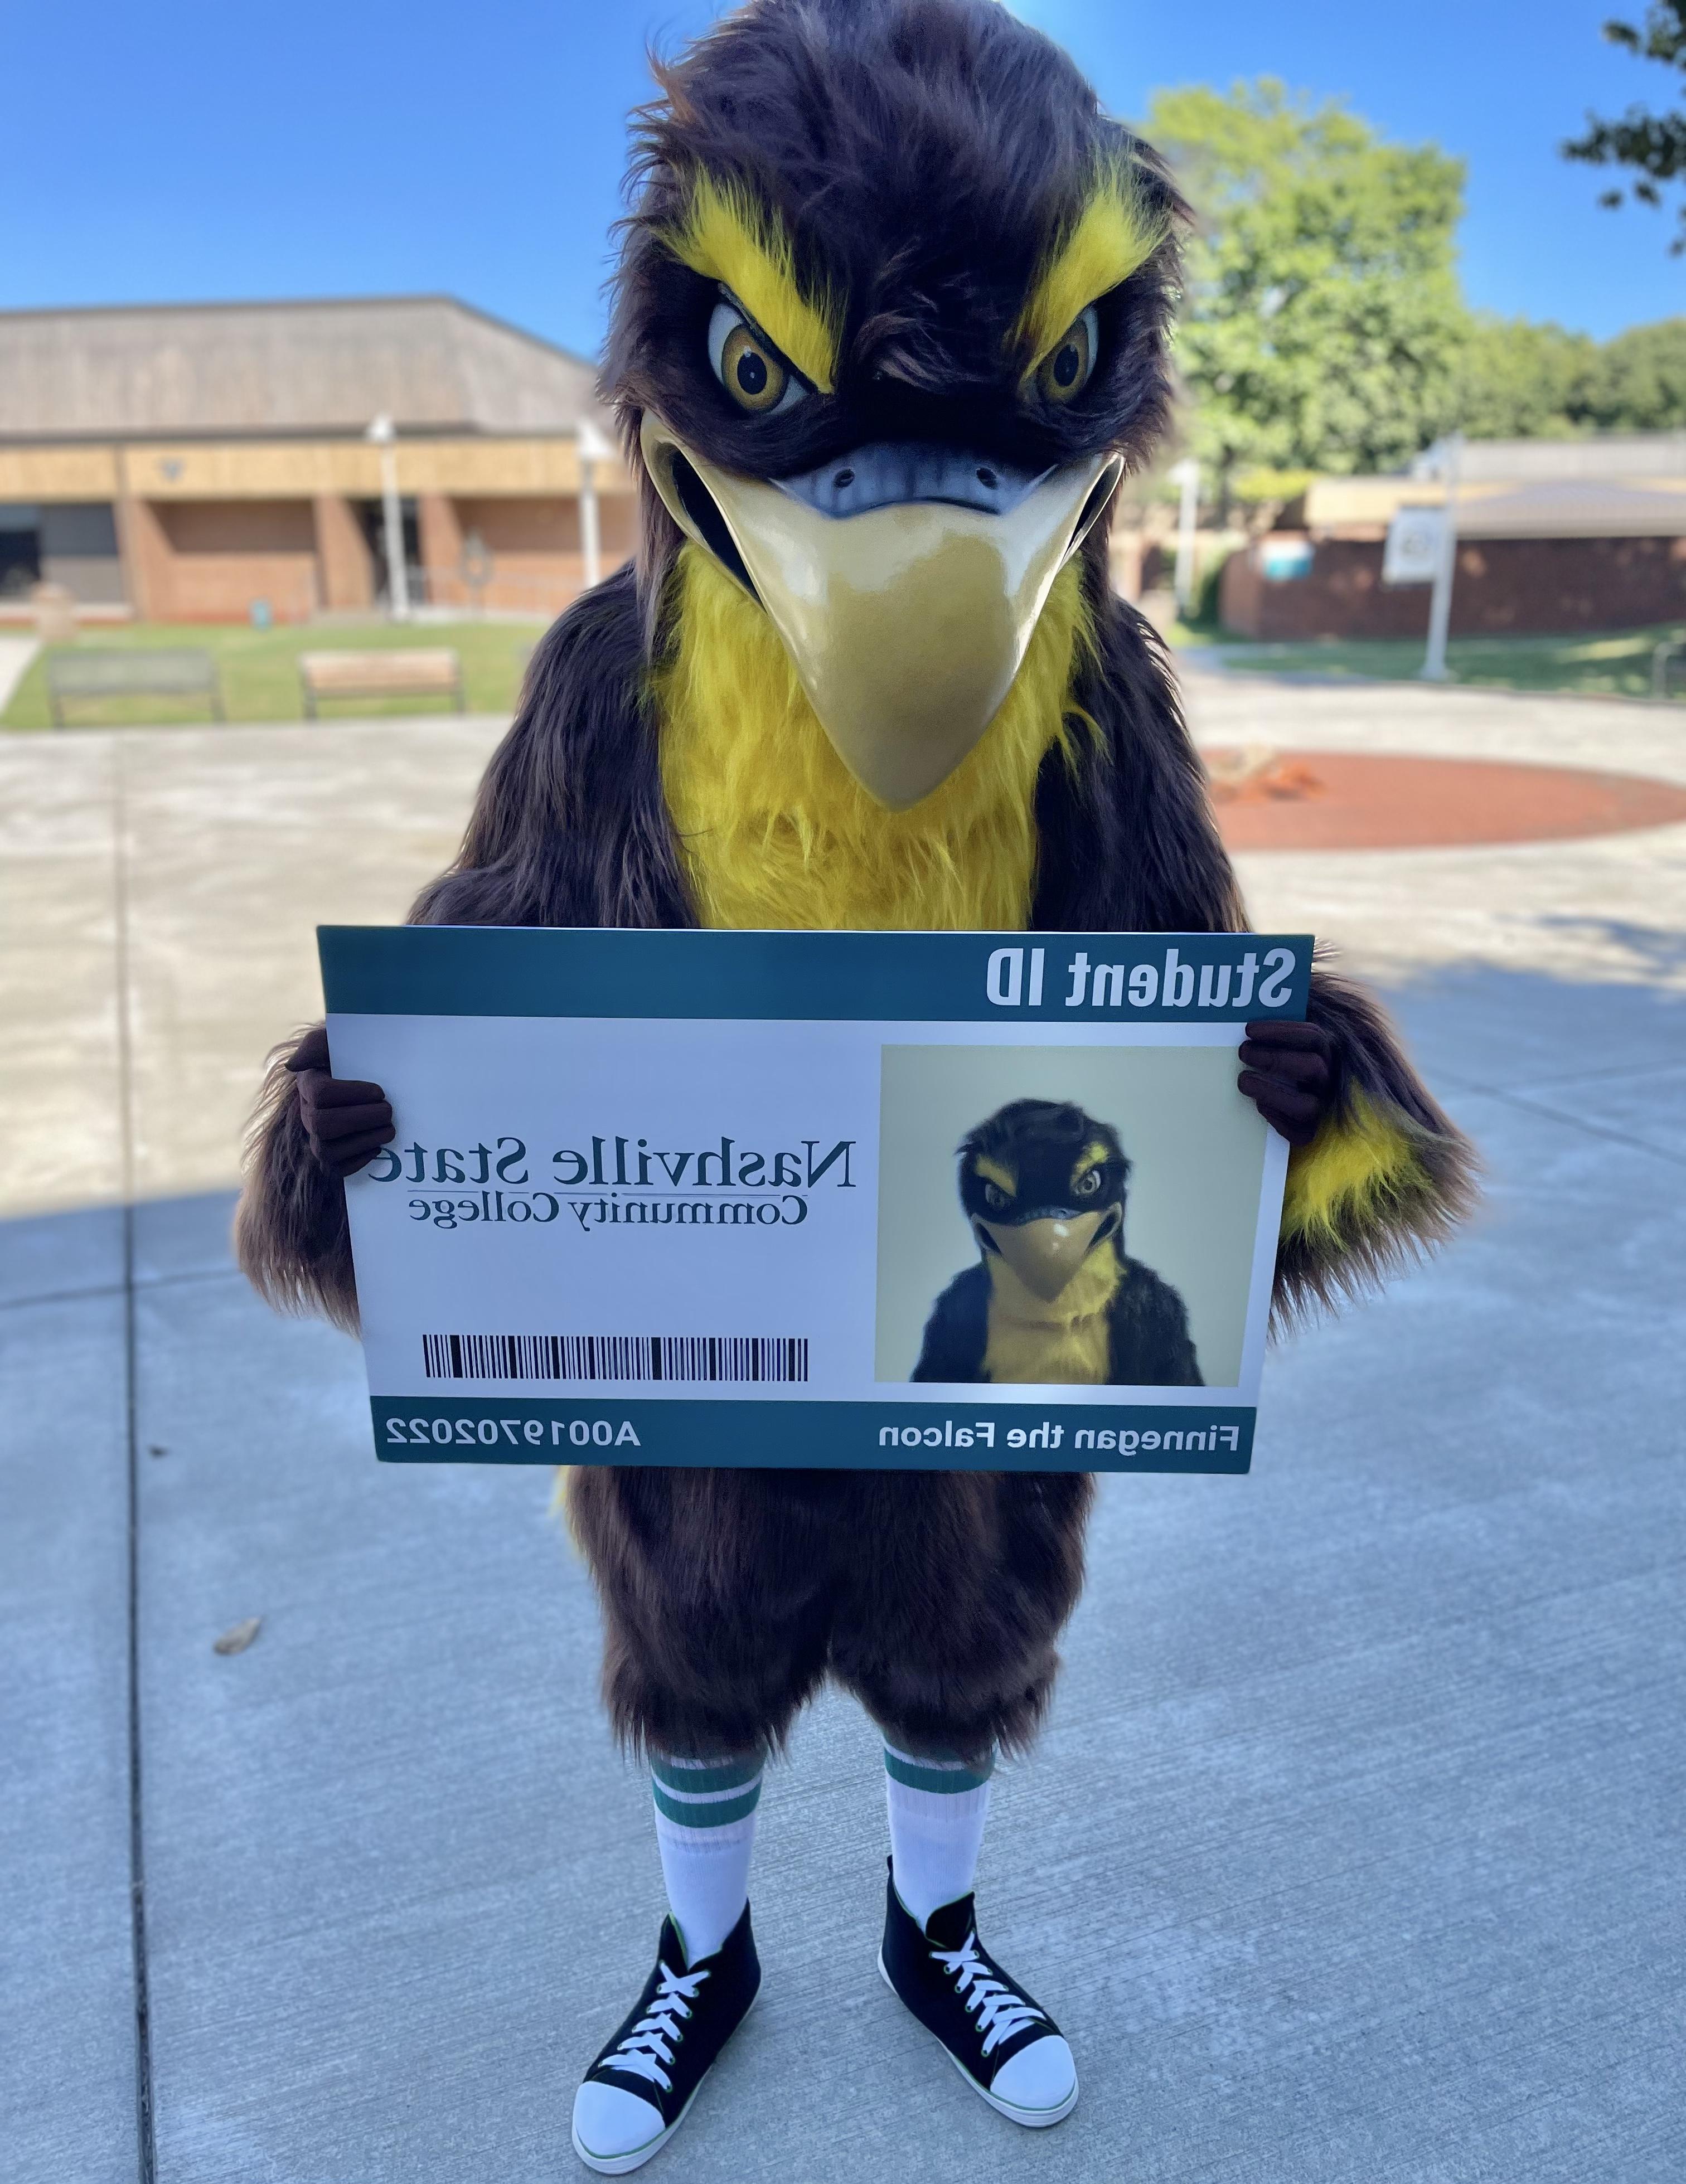 Nashville State Community College's mascot Finn the Falcon